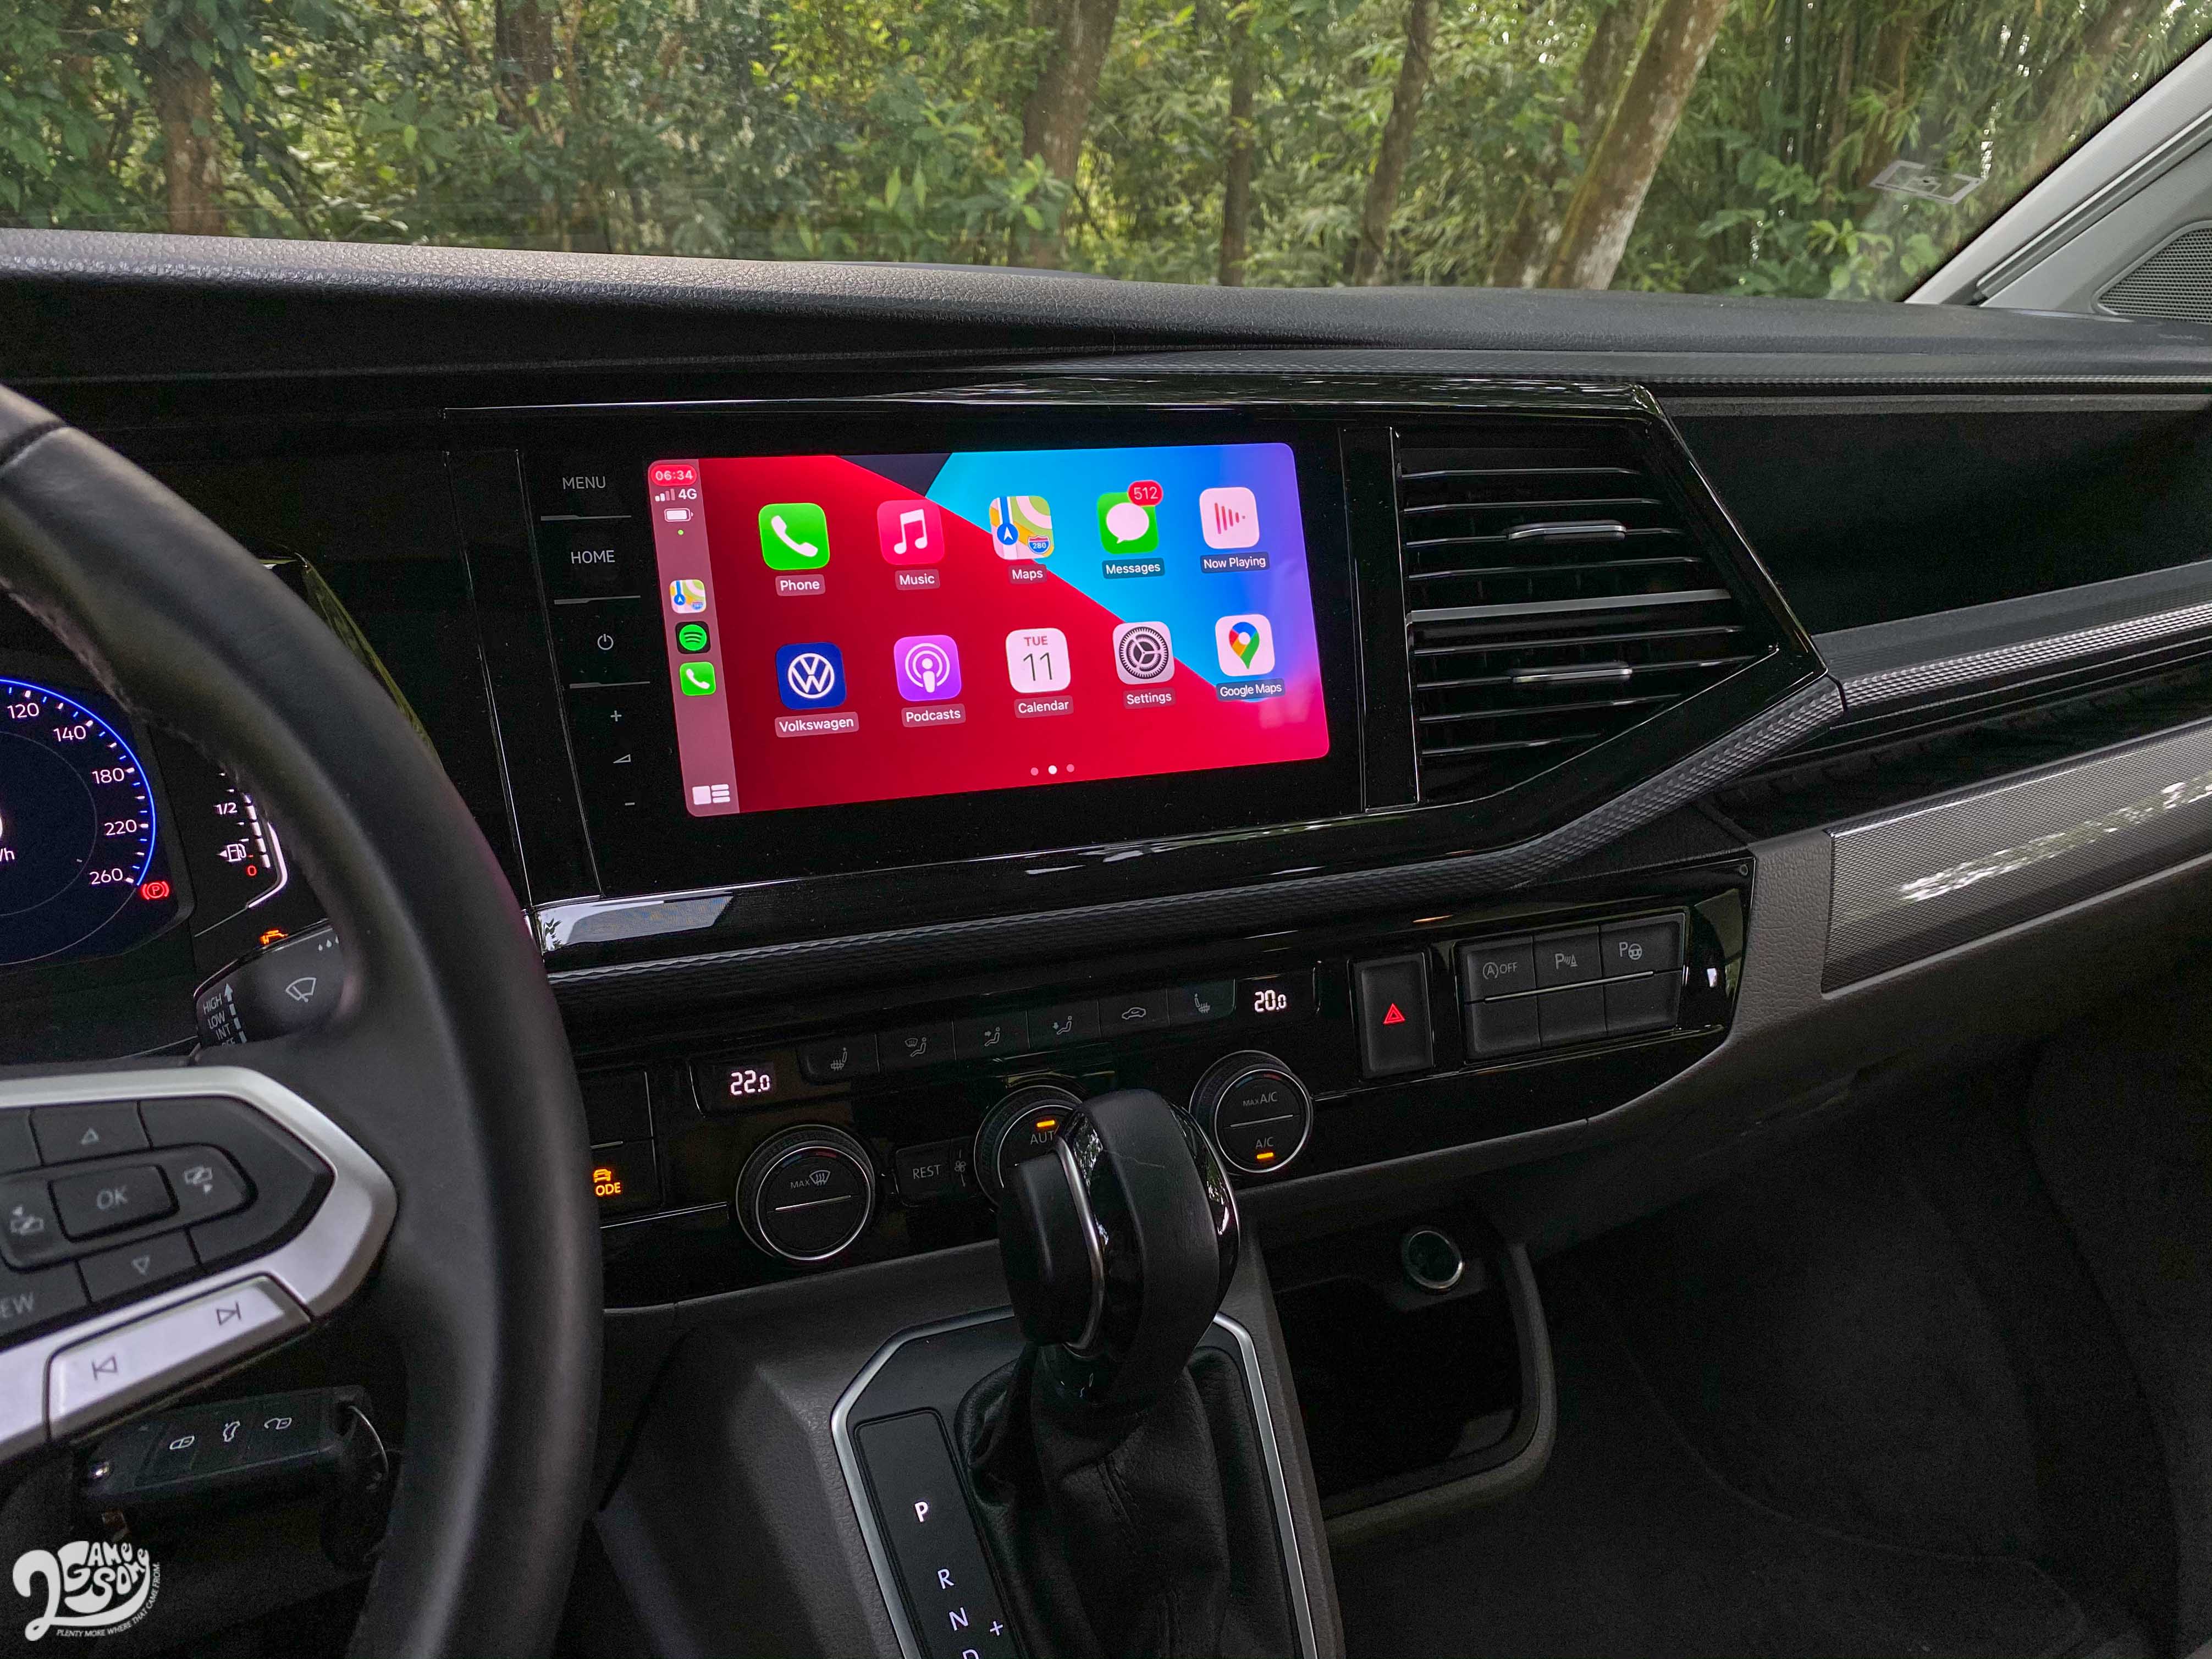 Discover Pro 9.2 吋多媒體鏡面觸控螢幕音響主機支援無線 Apple CarPlay。